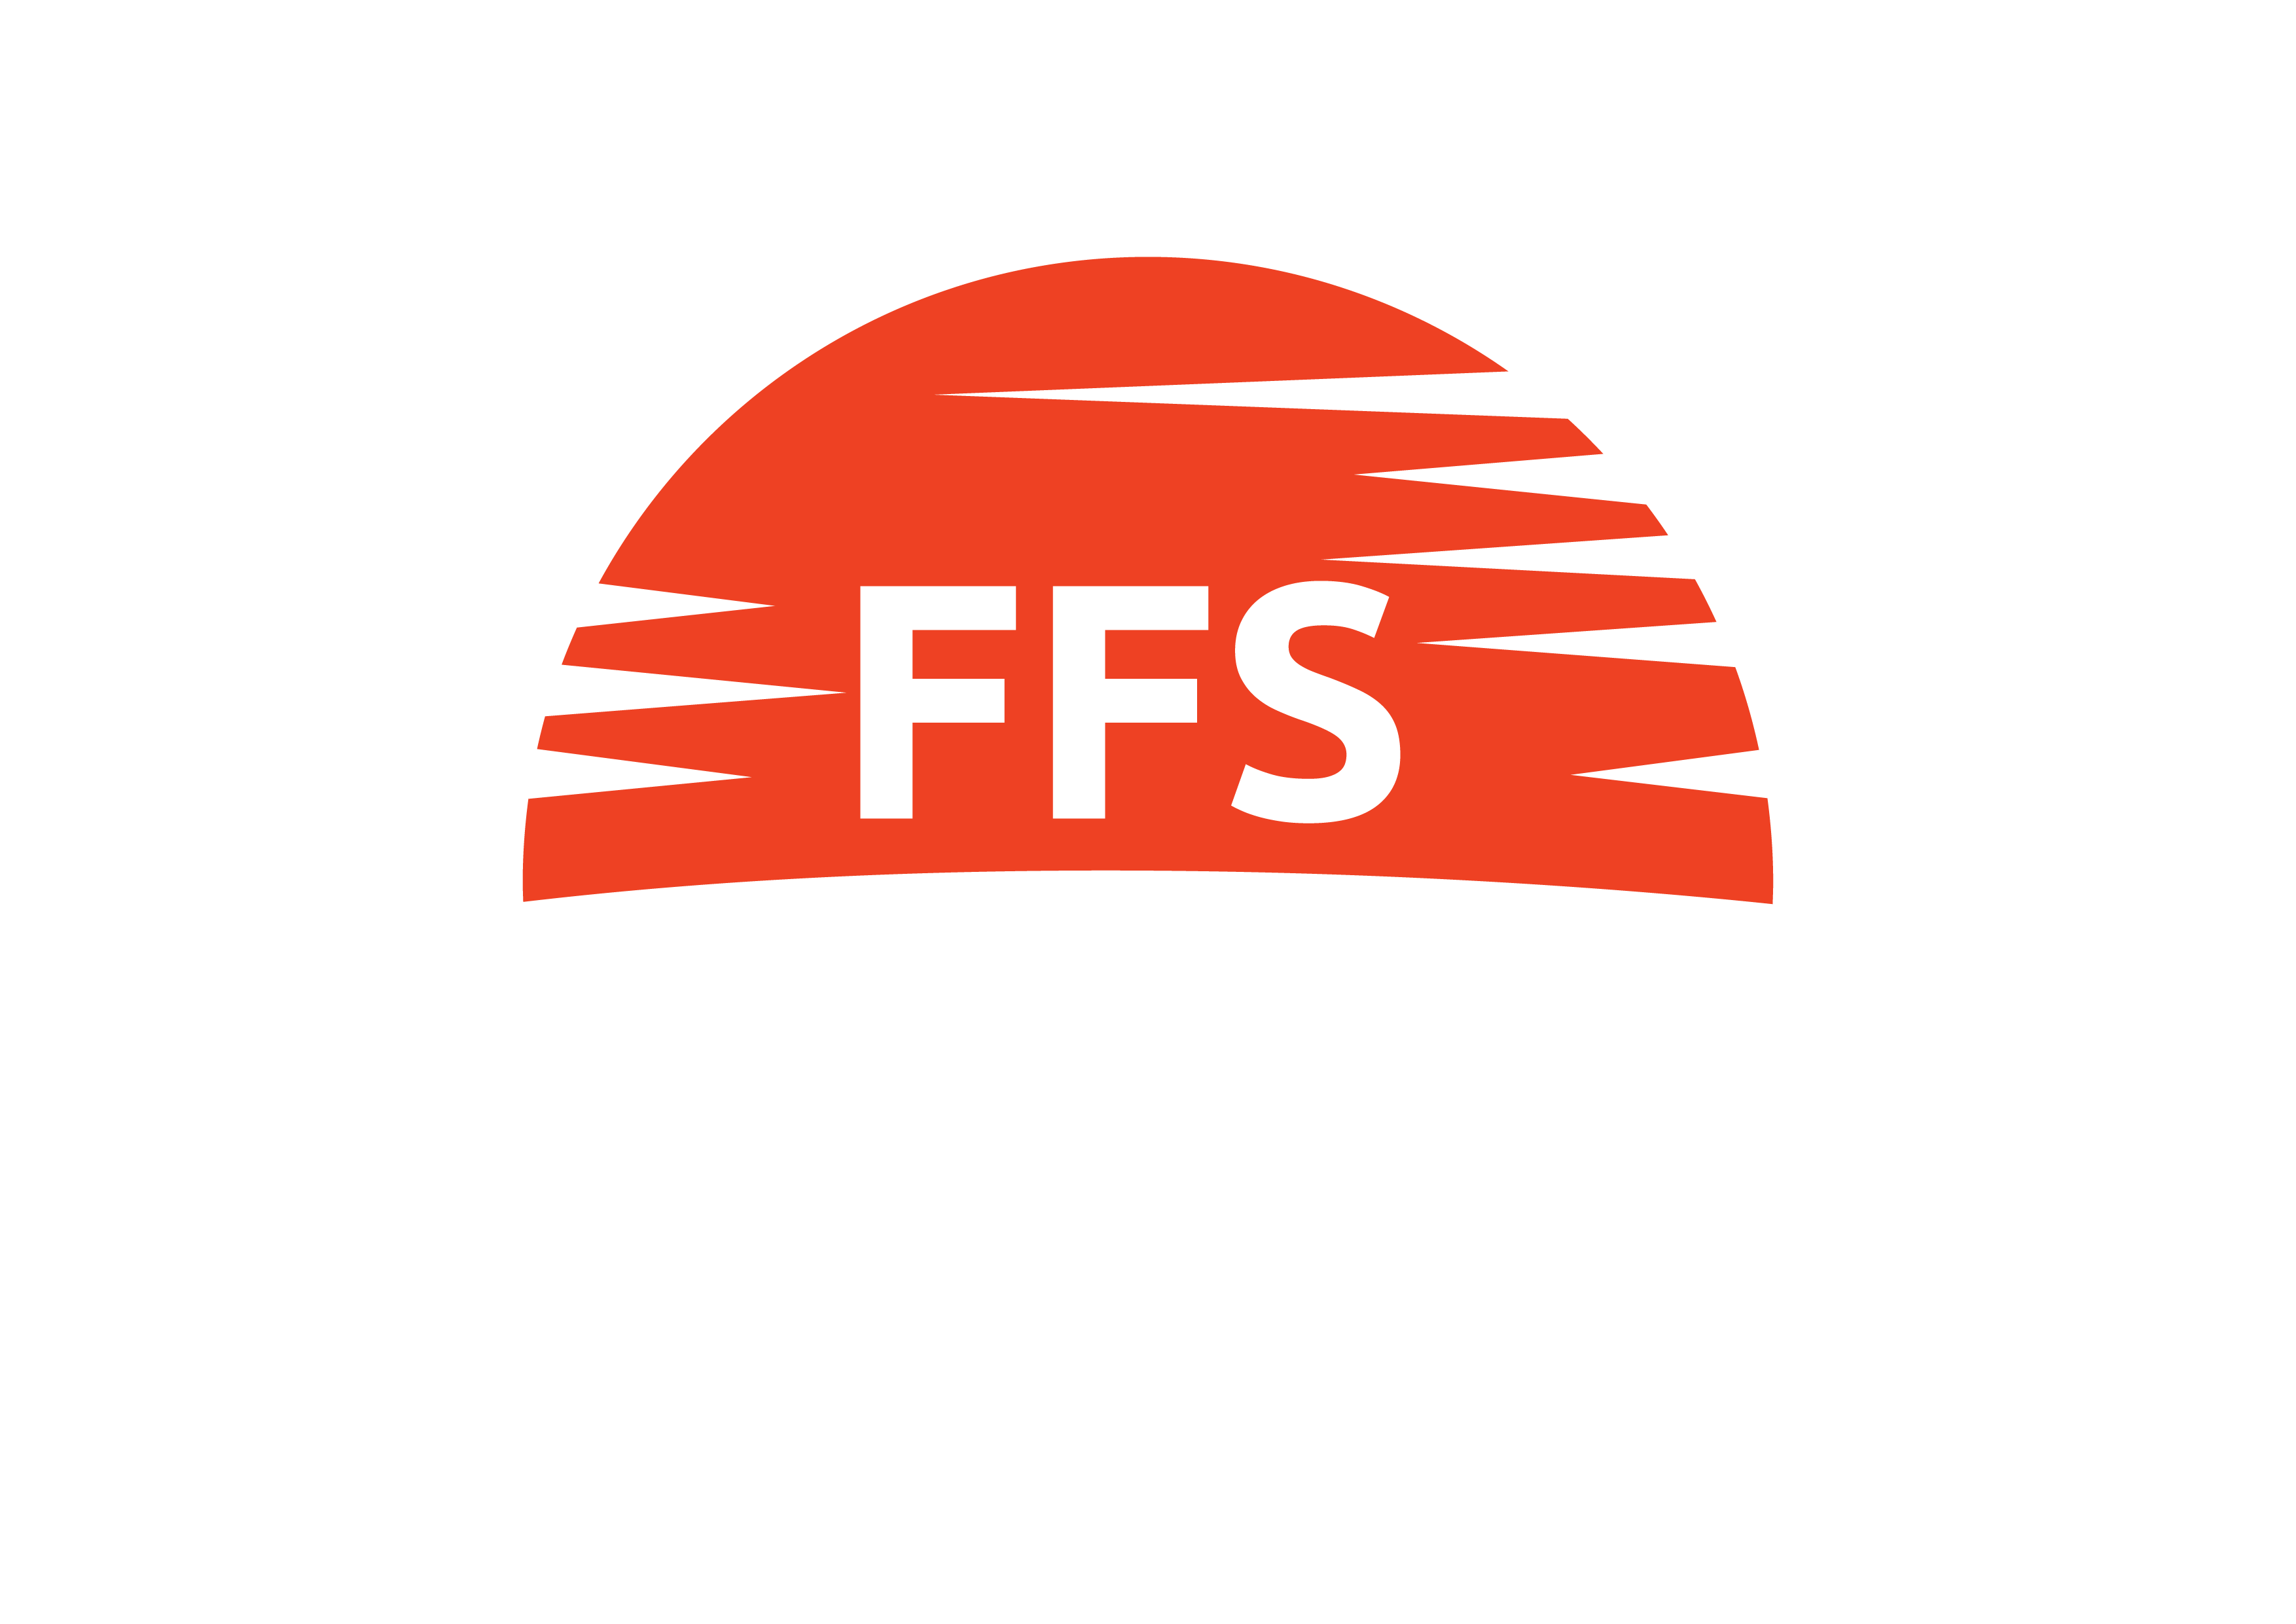 FFS